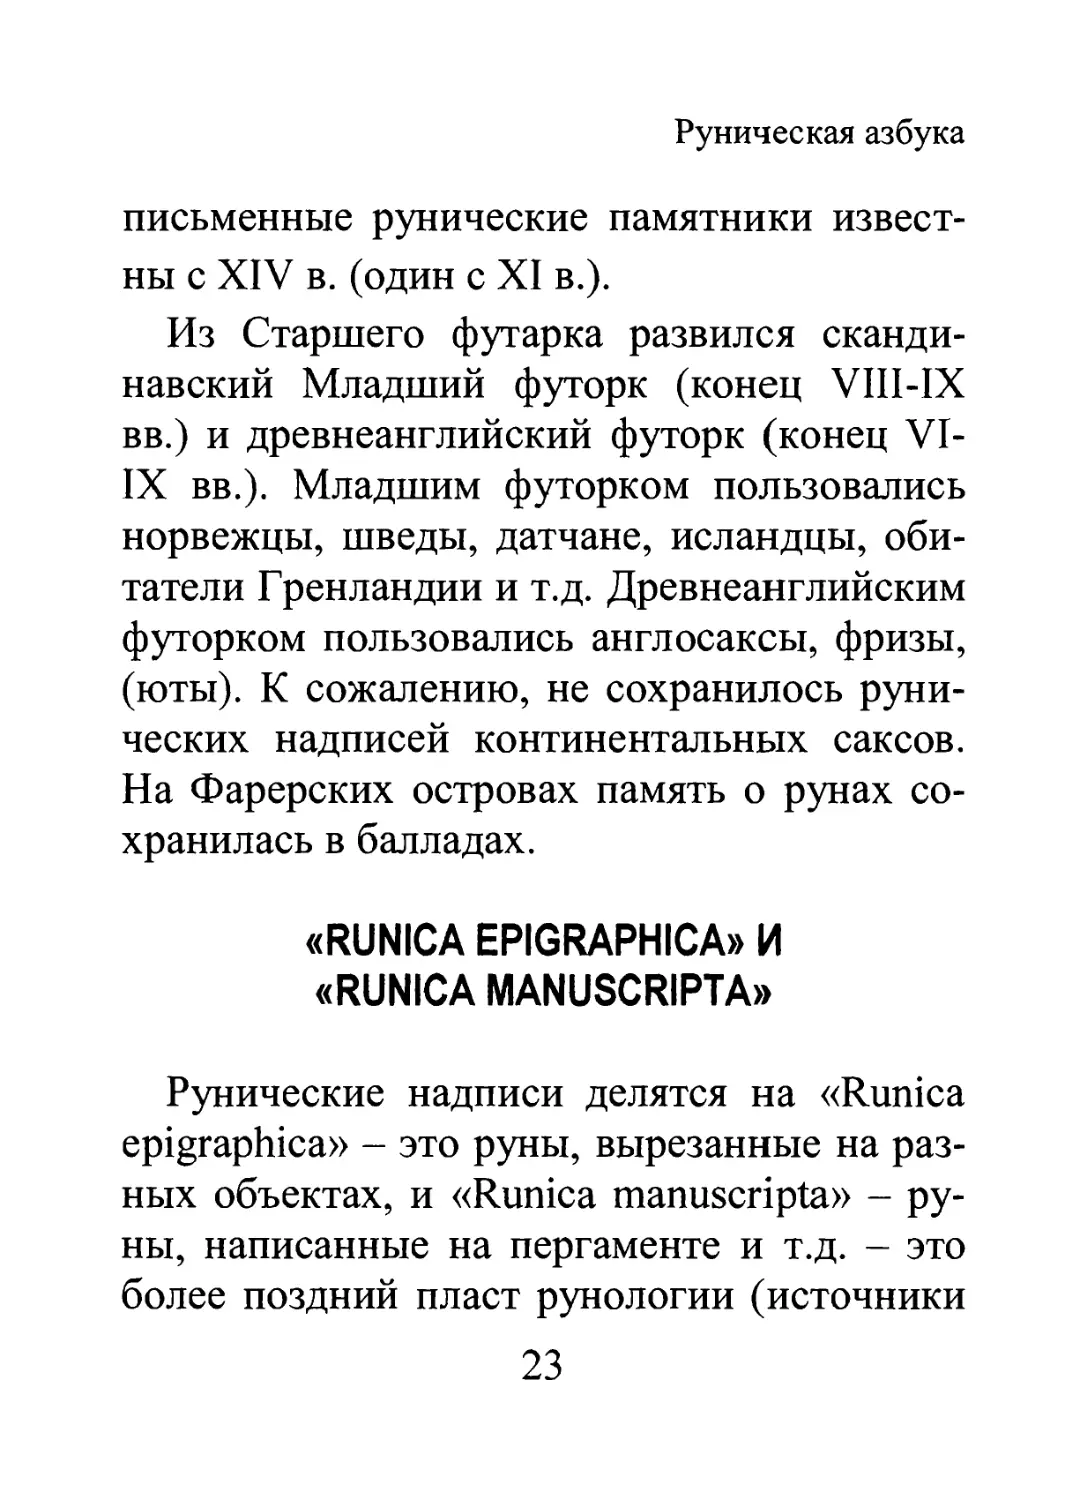 «Runica Epigraphica» и «Runica Manuscripta»